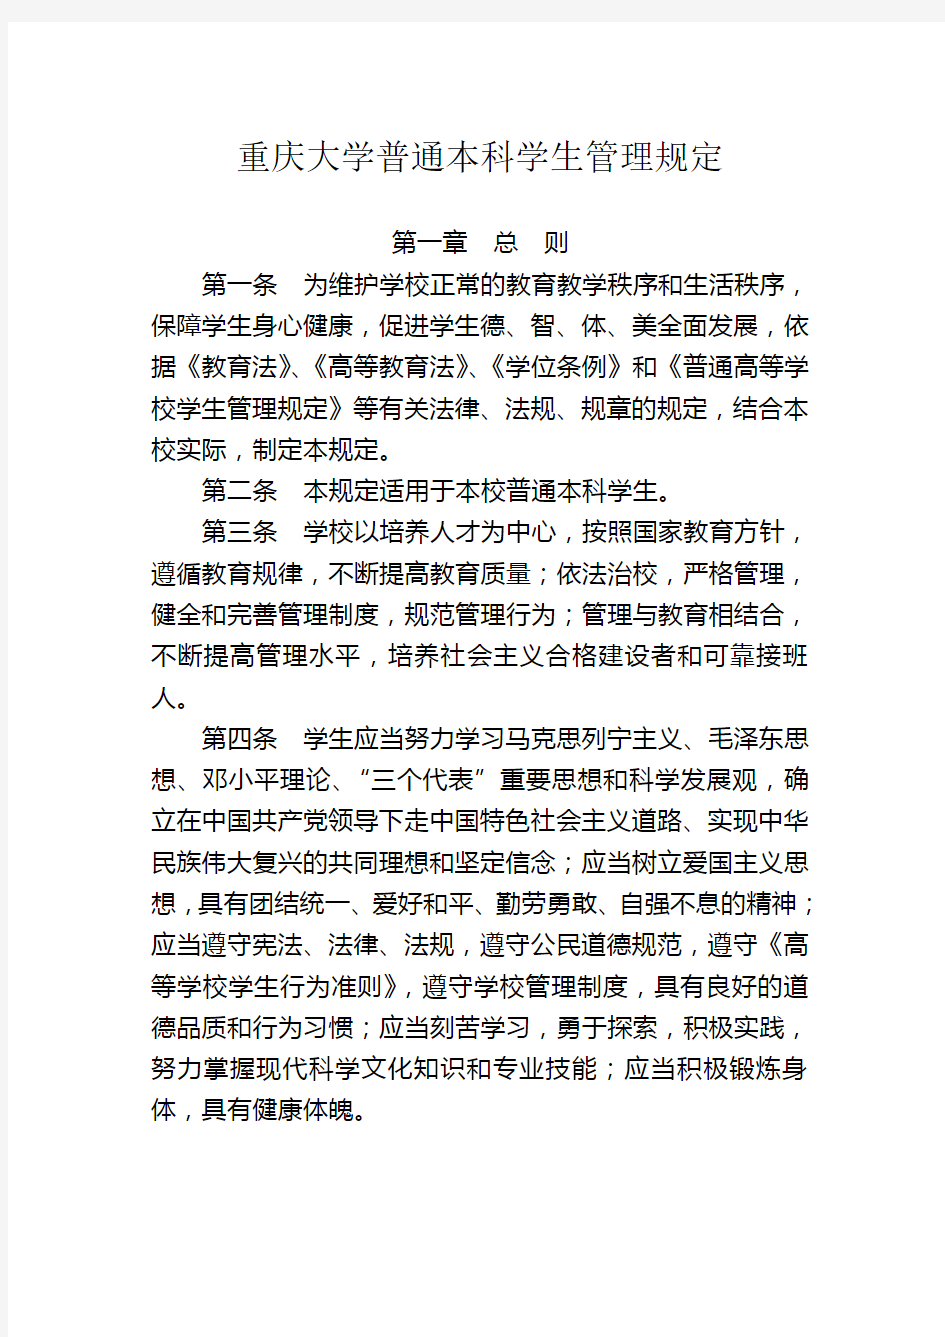 重庆大学普通本科学生管理规定